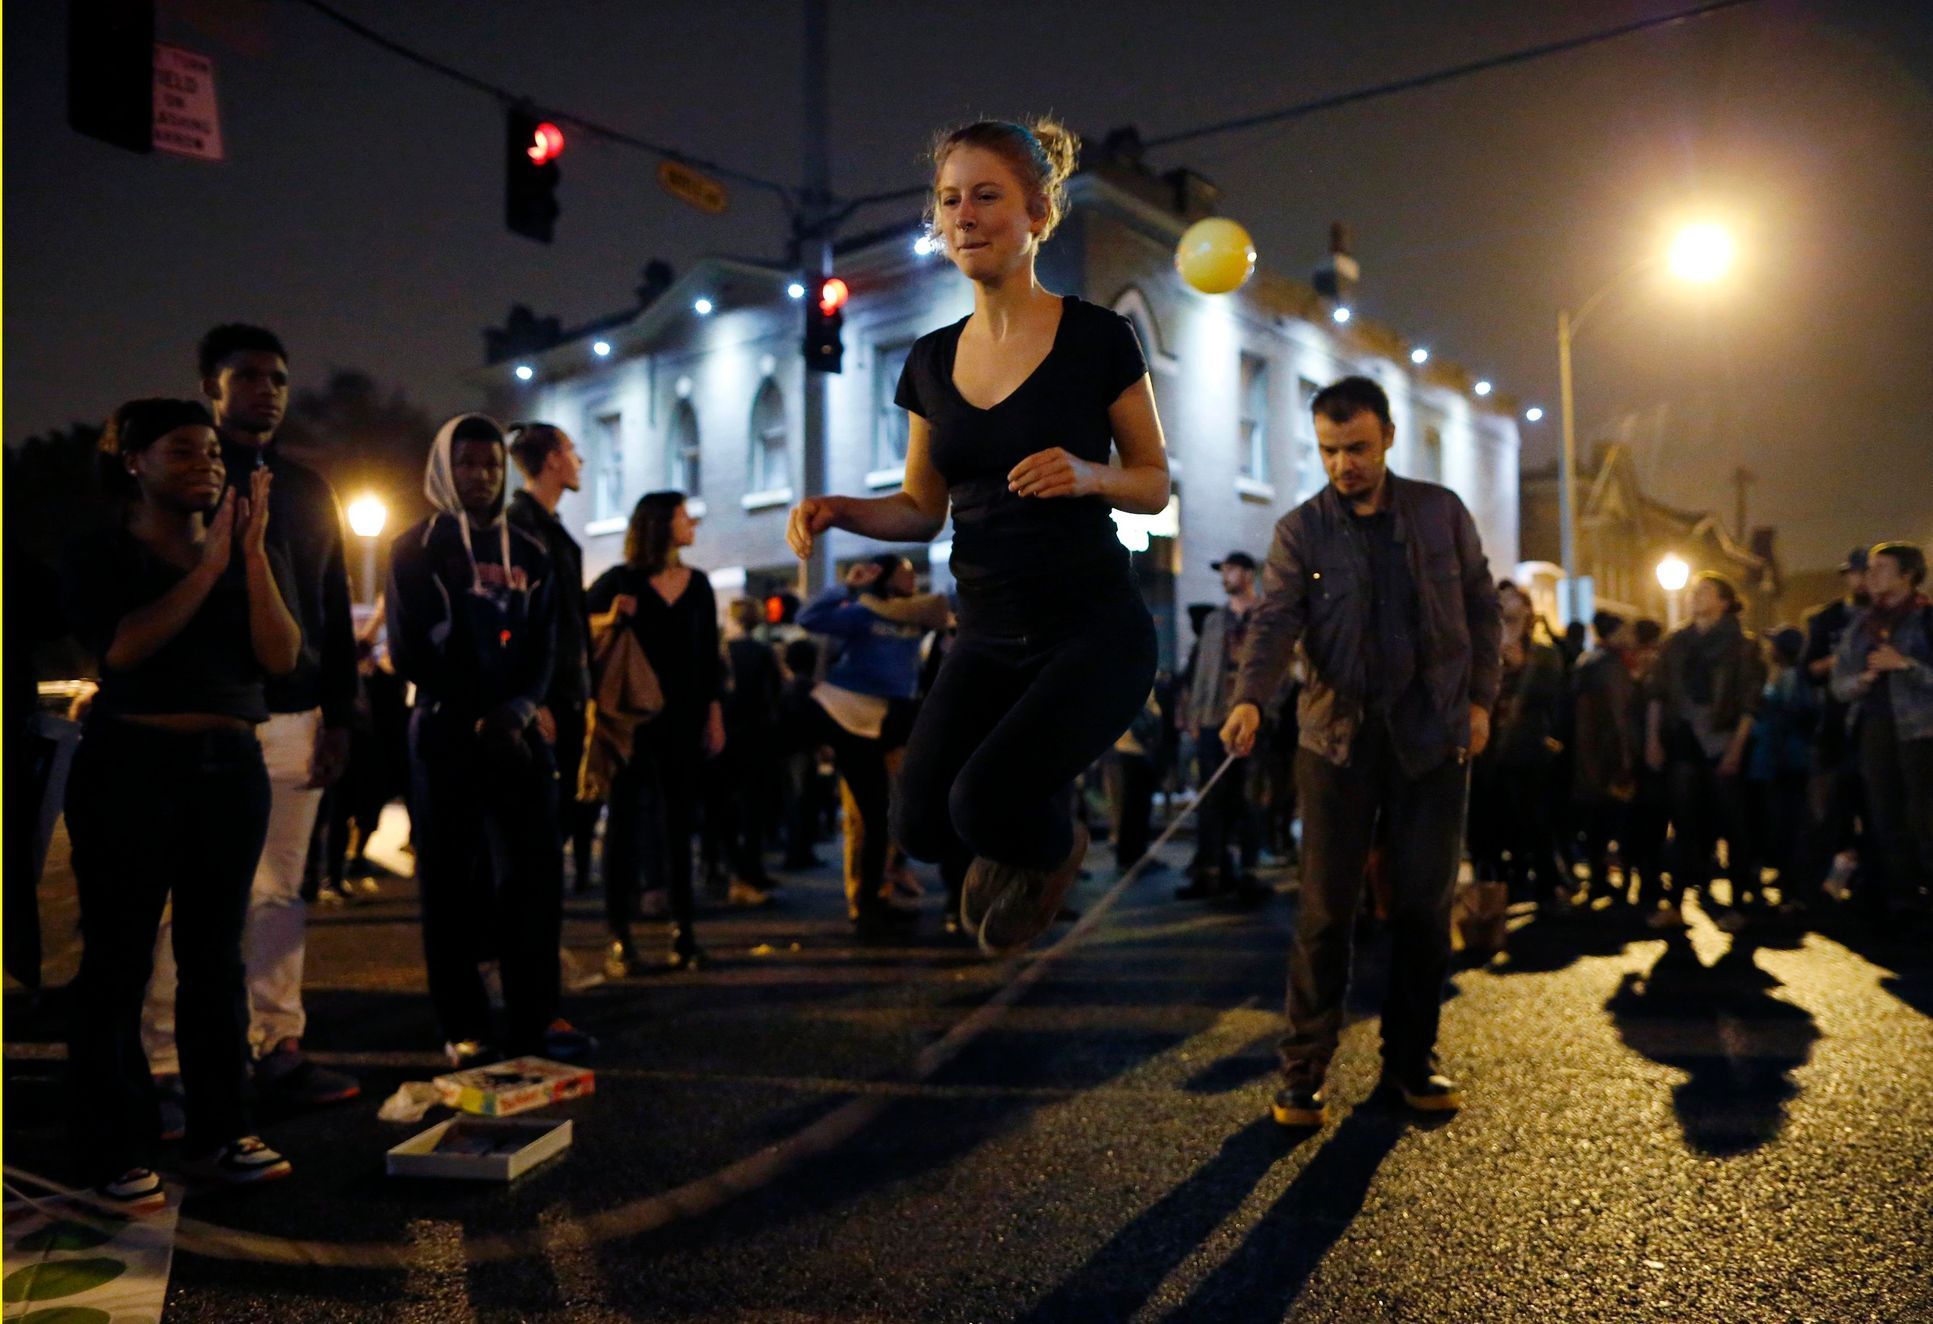 Prostestující skakající přes švihadlo při blokádě křižovatky během pochodu v St. Louis